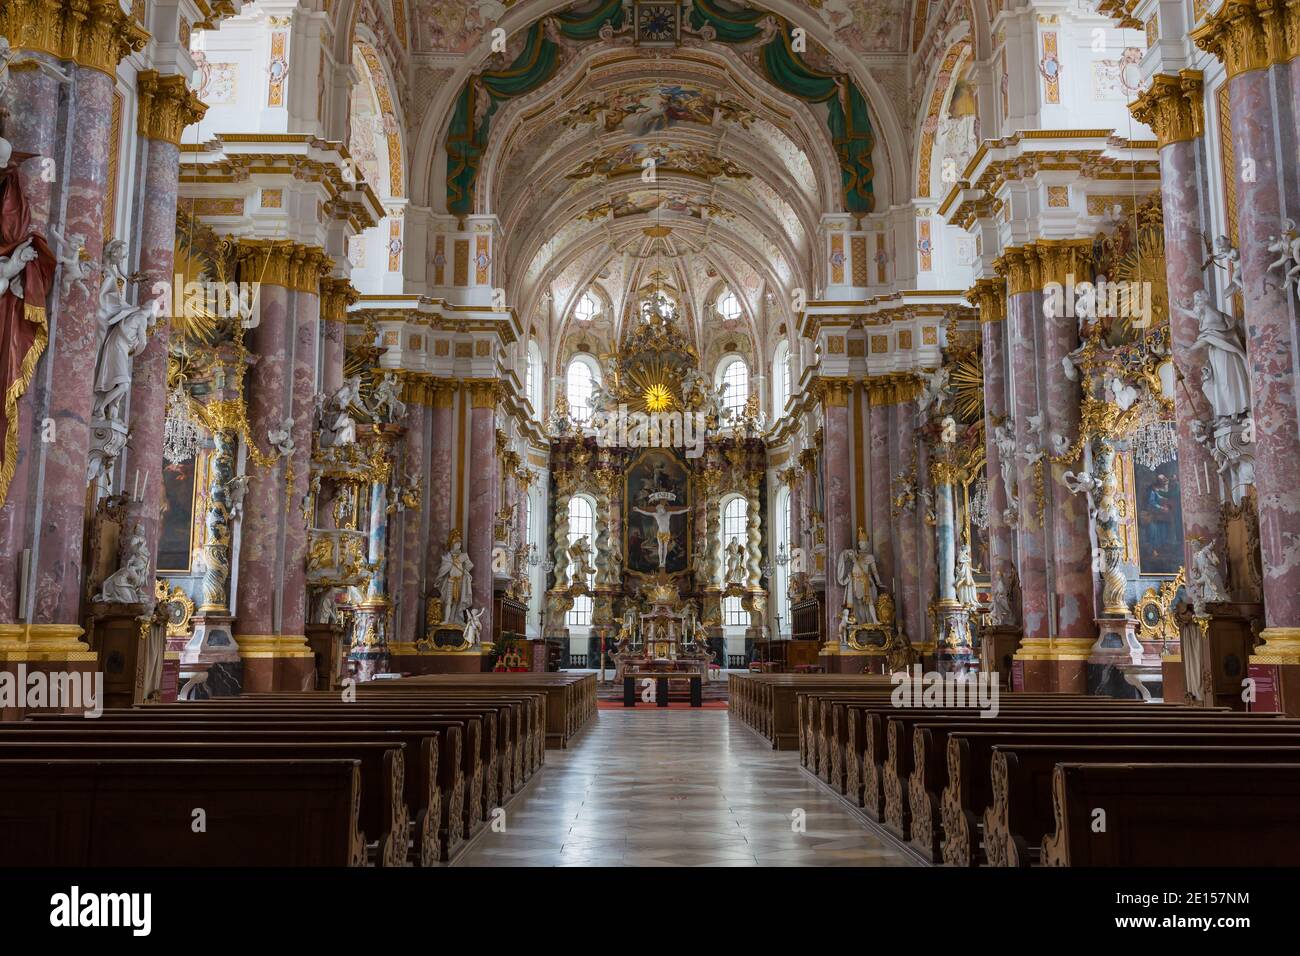 Fürstenfeldbruck, Germania - 29 novembre 2020: Interno della chiesa di Santa Maria (S. Mariä) - la chiesa fa parte dell'abbazia di Fürstenfeld. Architettura barocca. Foto Stock